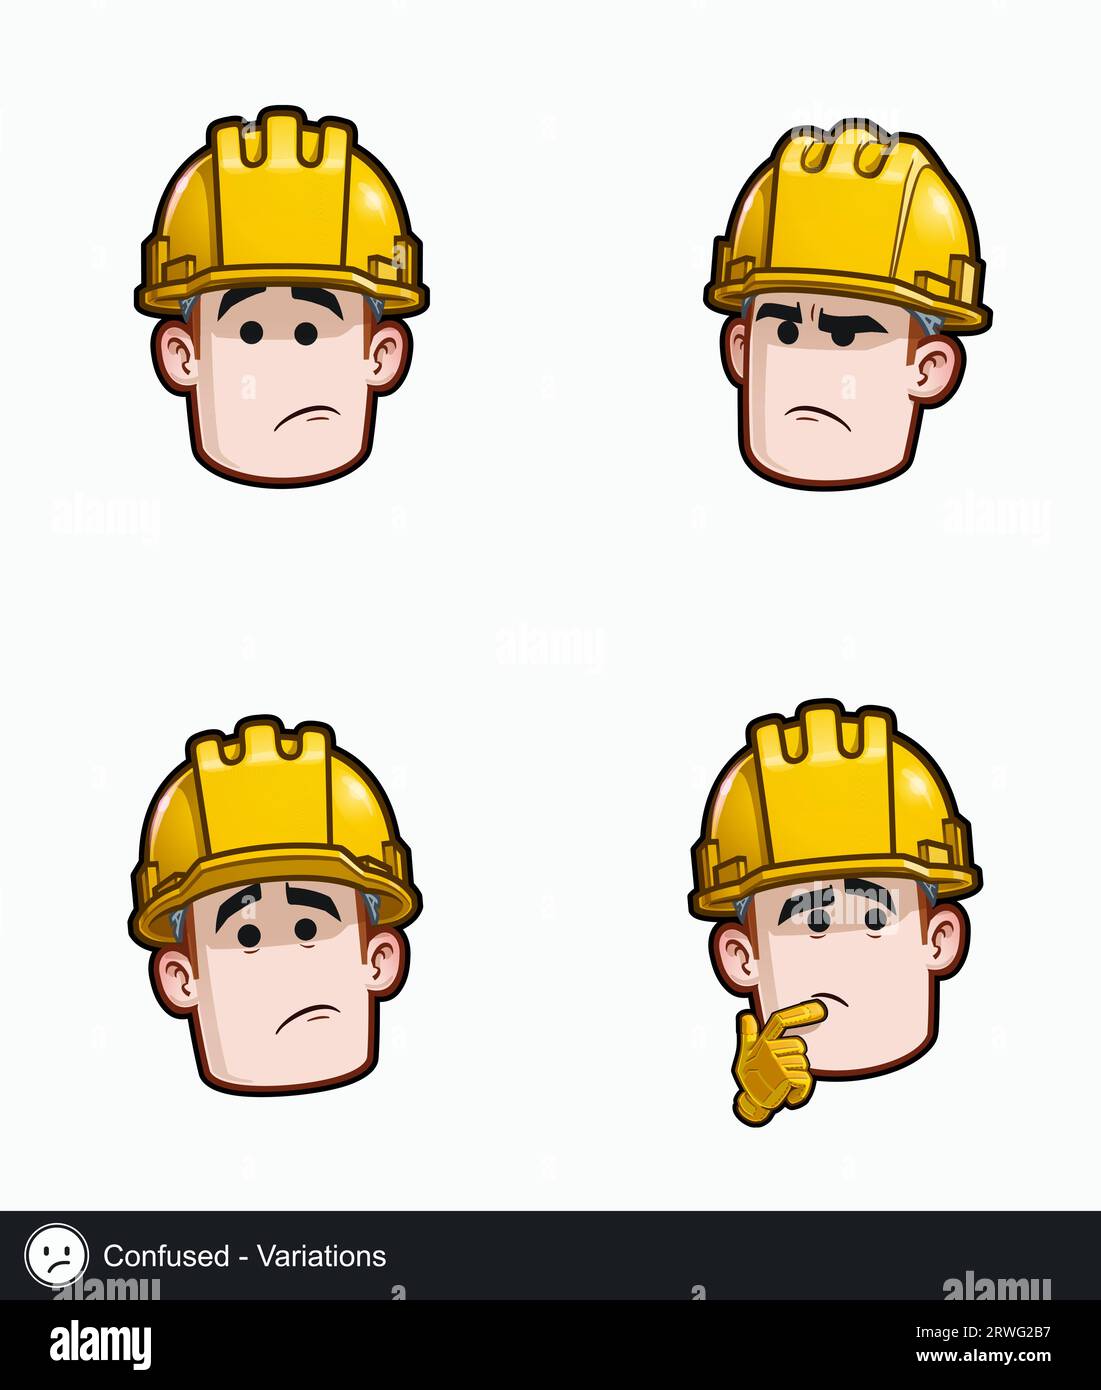 Set di icone di un volto di un operaio edile con variazioni di espressione emotiva confuse. Tutti gli elementi sono ordinati su livelli e gruppi ben descritti. Illustrazione Vettoriale